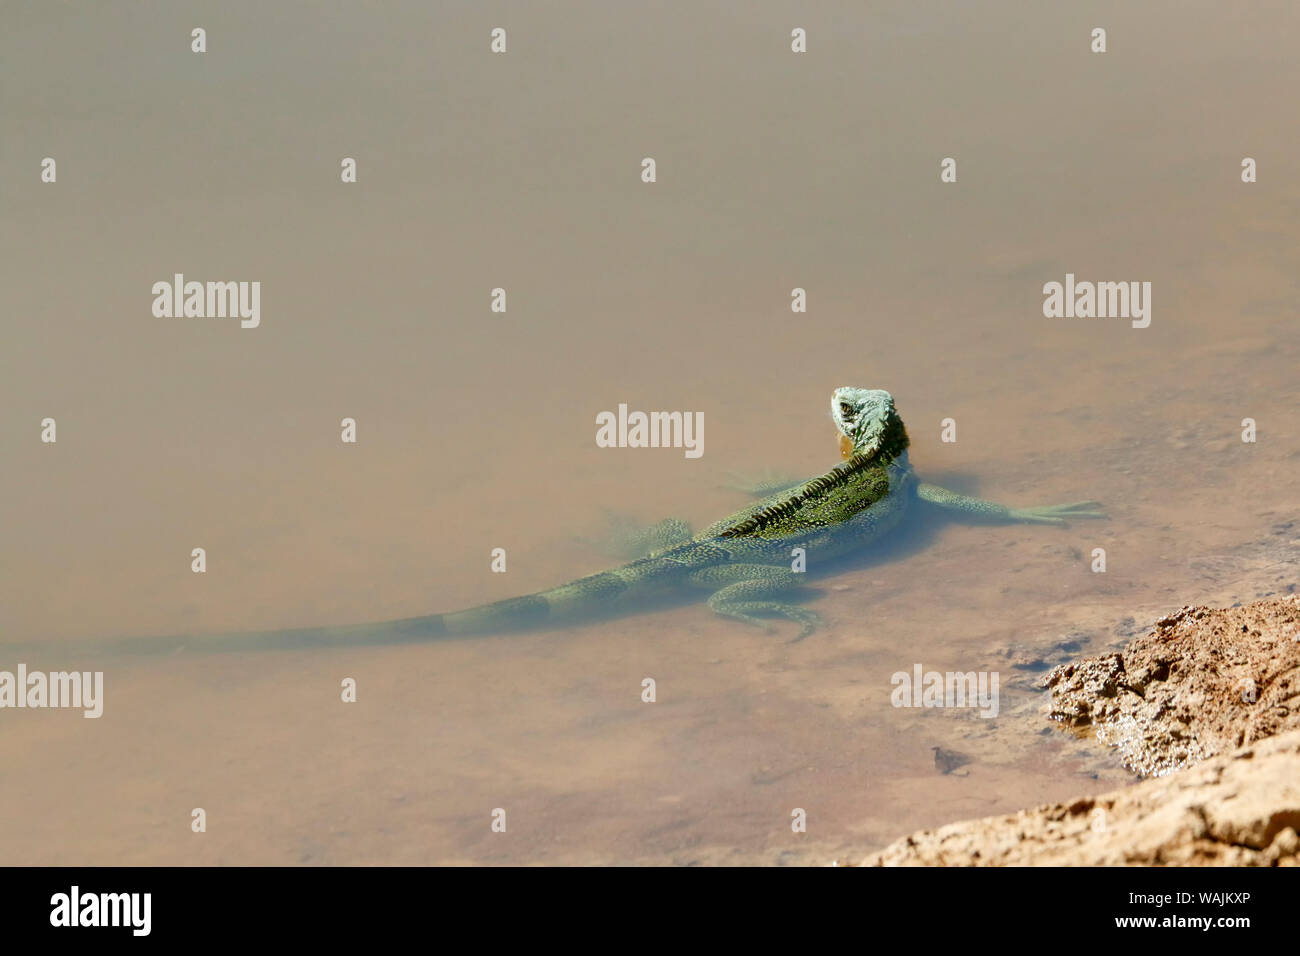 Pantanal, Mato Grosso, Brésil. Iguane vert dans les bas-fonds d'une rivière. Vert, ou le conjoint, des iguanes sont parmi les plus grands lézards dans les Amériques, avec une moyenne d'environ 6,5 pieds (2 mètres) de long et pesant environ 11 livres (5 kilogrammes). Banque D'Images